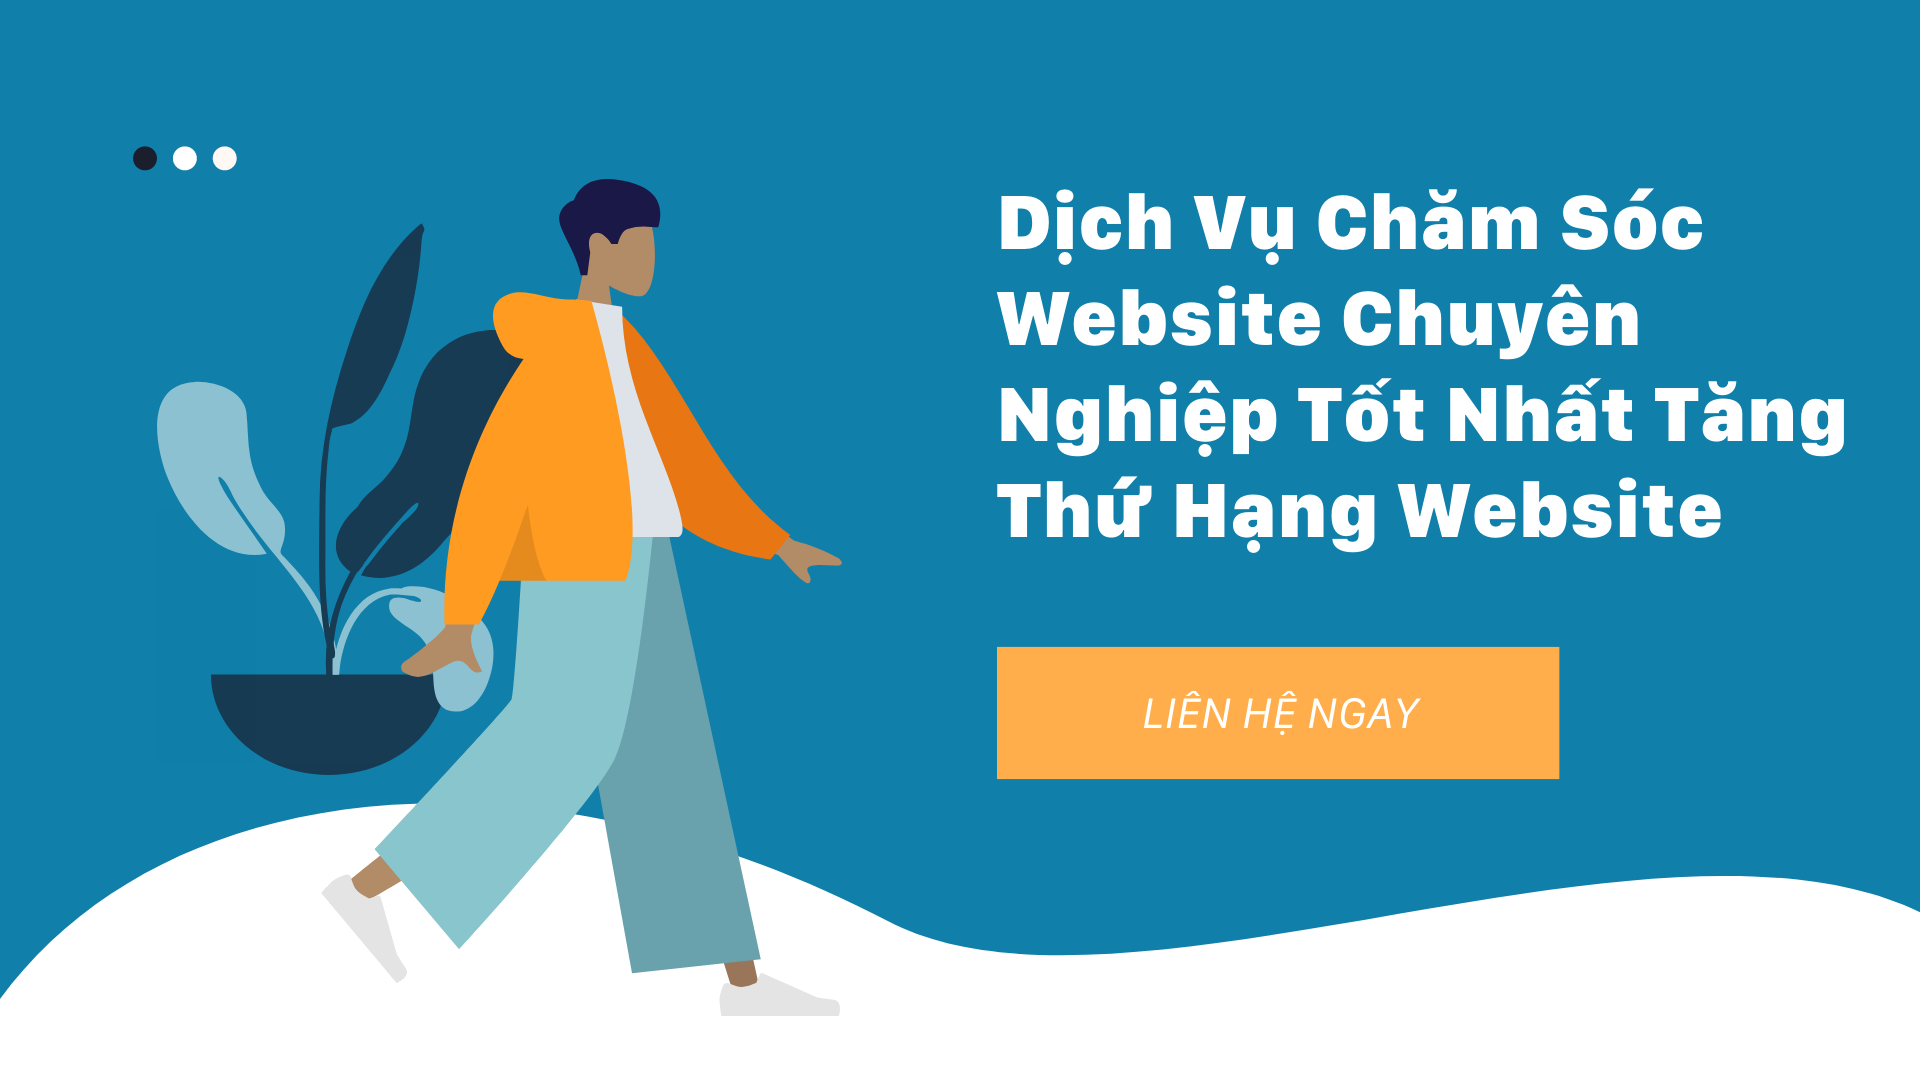 Dịch Vụ Chăm Sóc Website Chuyên Nghiệp Tốt Nhất Tăng Thứ Hạng Website